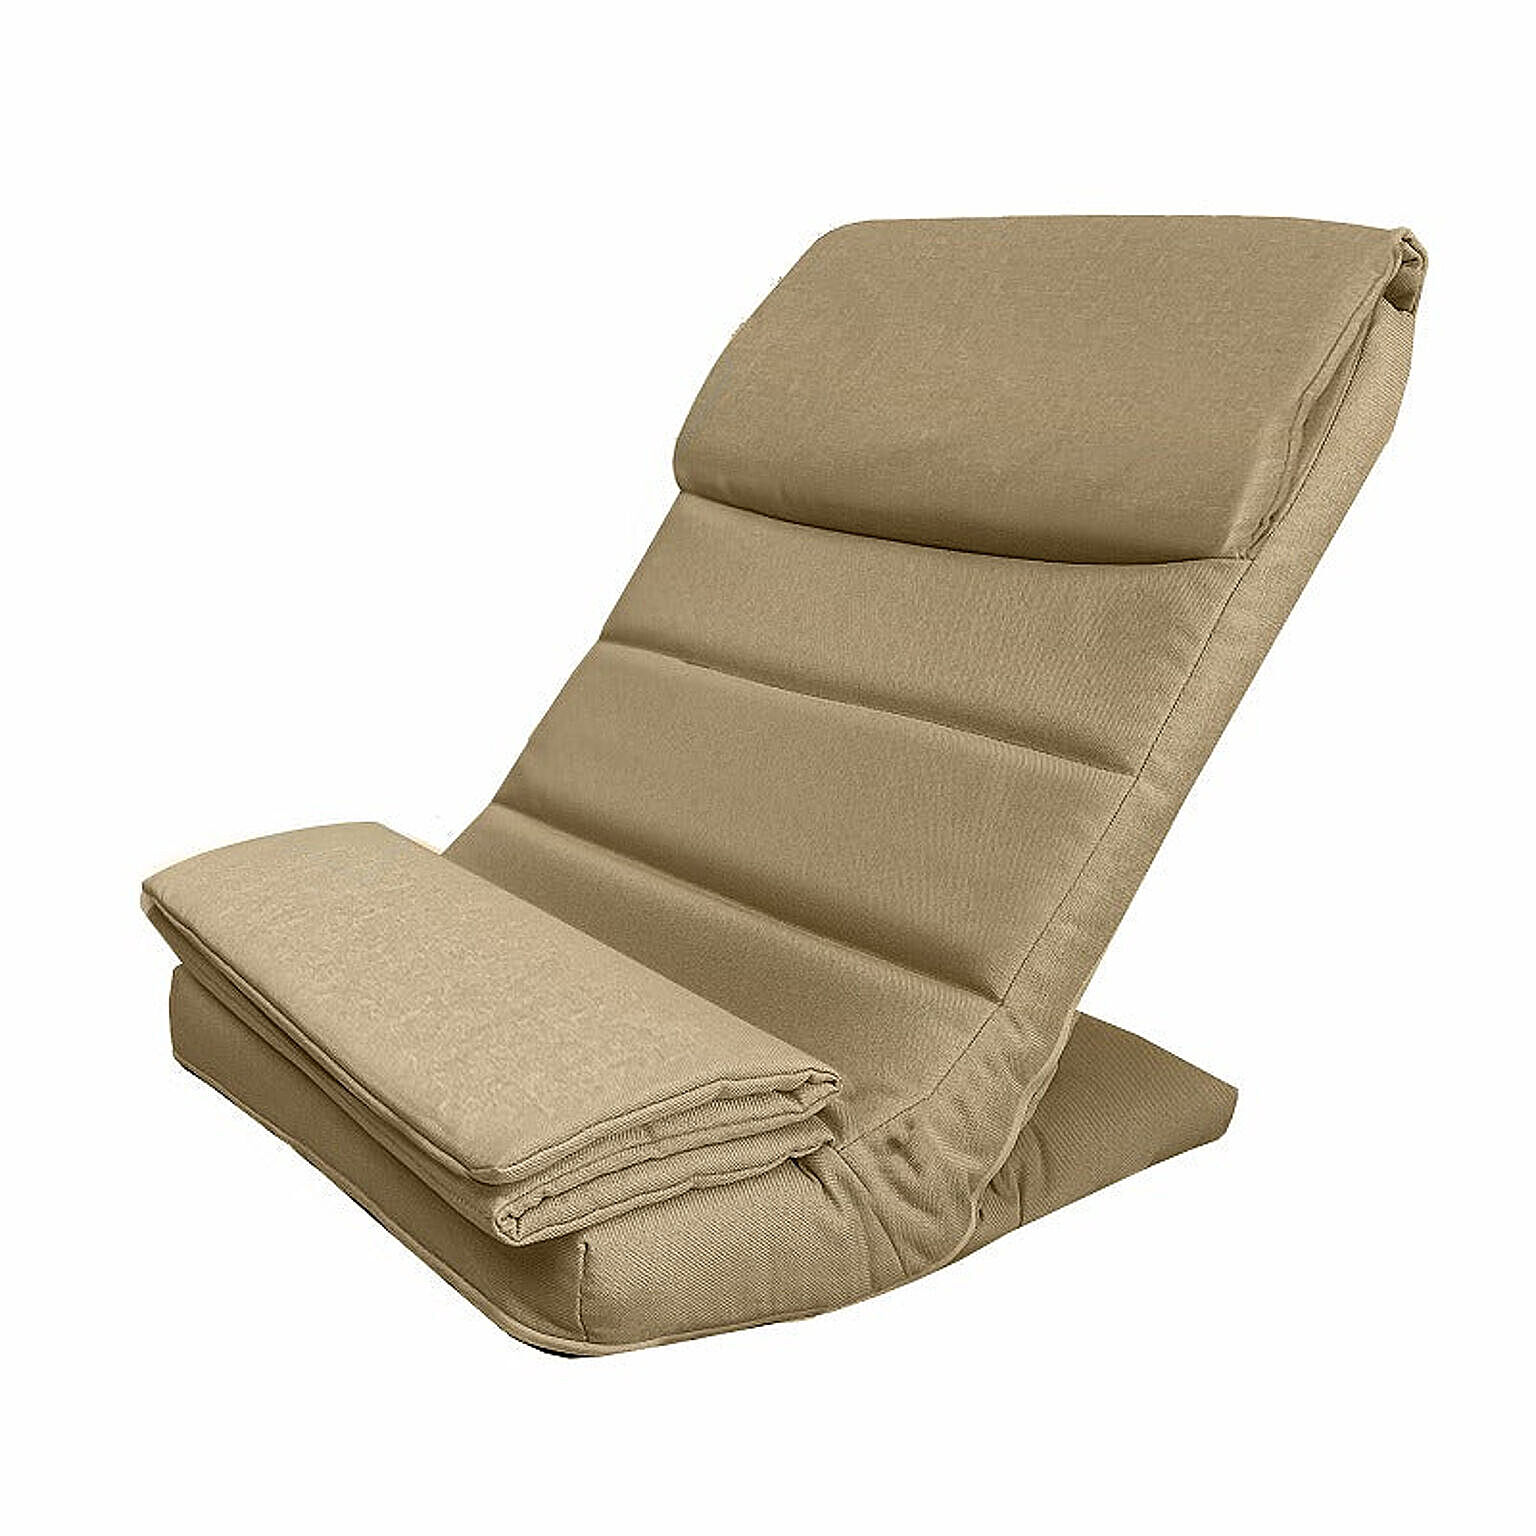 スリム座椅子 うすくて軽い 高さ49cm 犬用スロープ ペットステップ コンパクト収納 座面のうすい ペットスロープにも使用できる 座椅子 F-1888